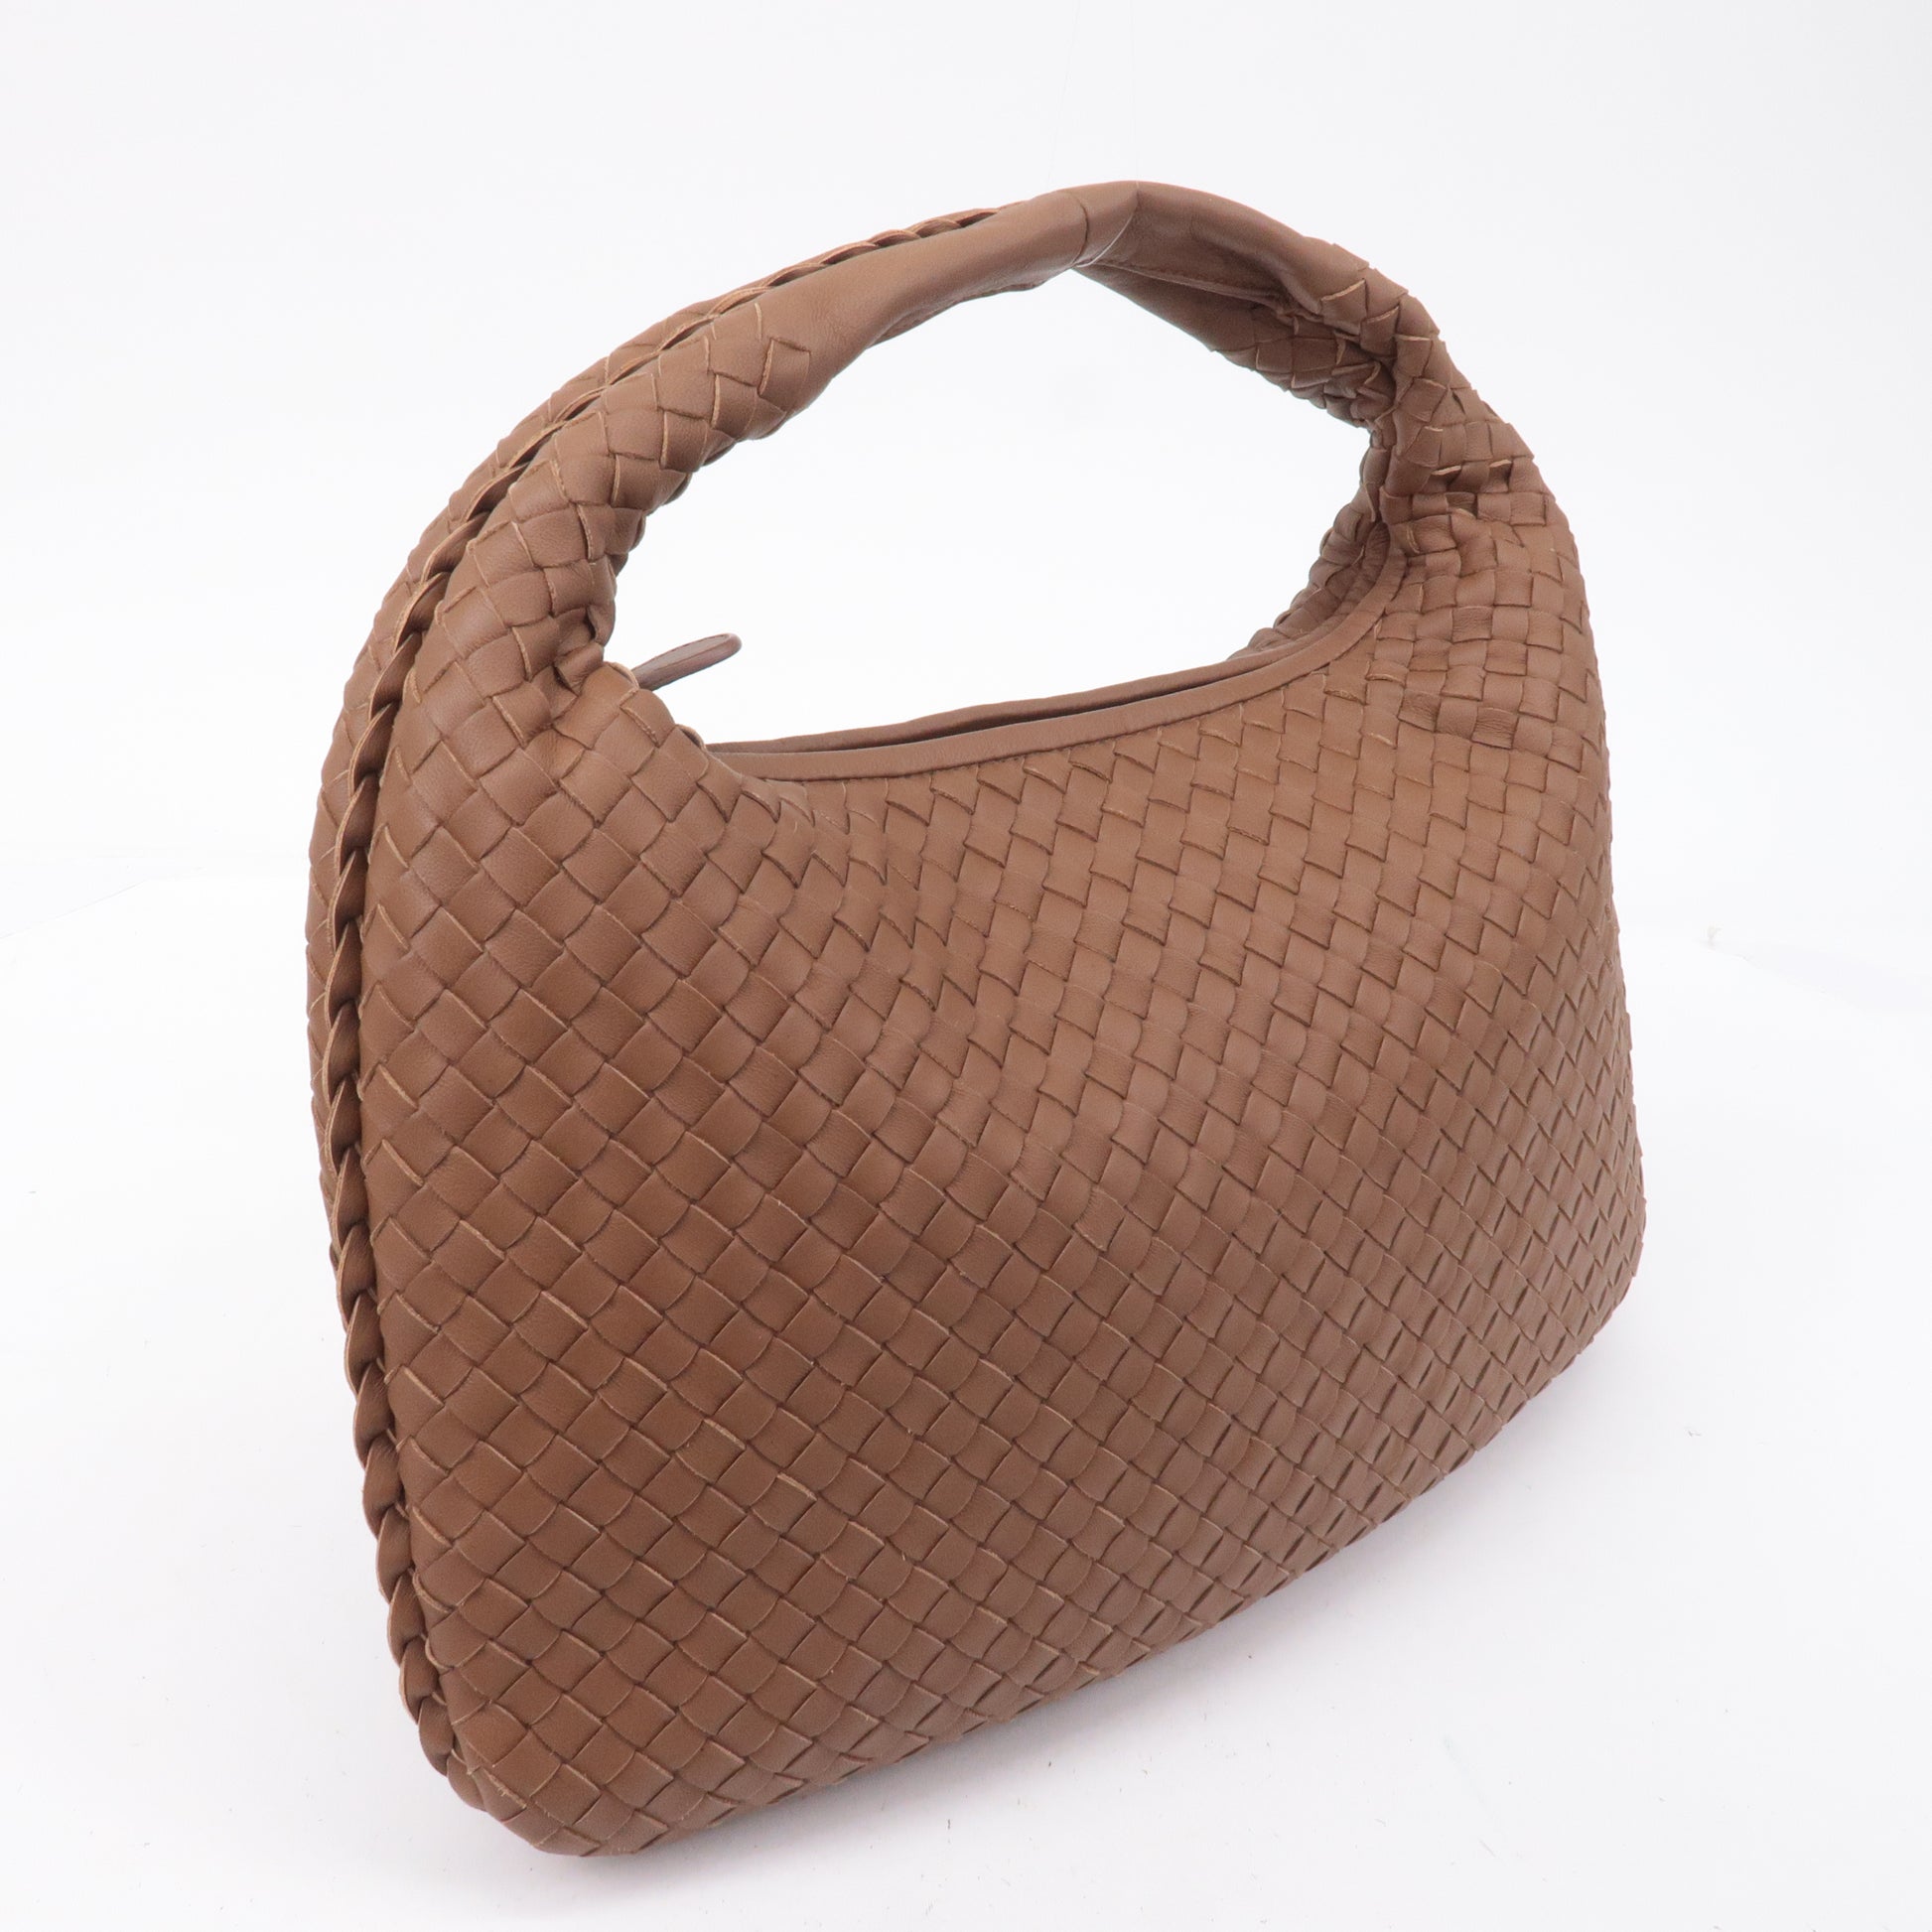 BOTTEGA-VENETA-Intrecciato-Hobo-Leather-Shoulder-Bag-Pink-1156548